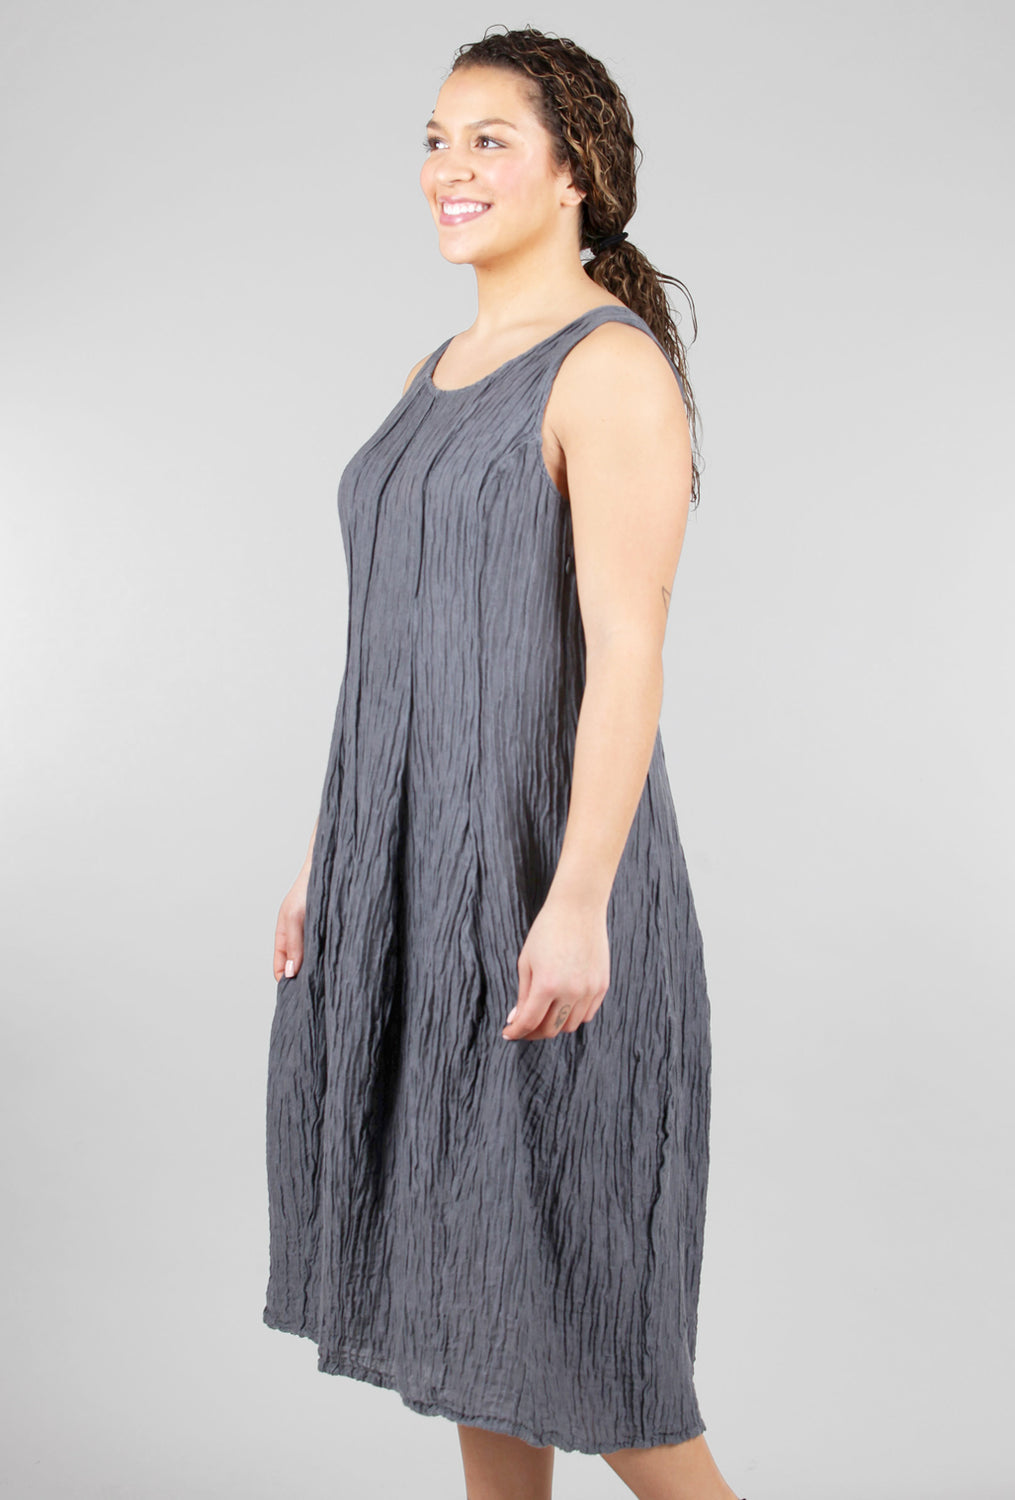 Grizas Silk-Linen Crinkle Tank Dress, Slate 